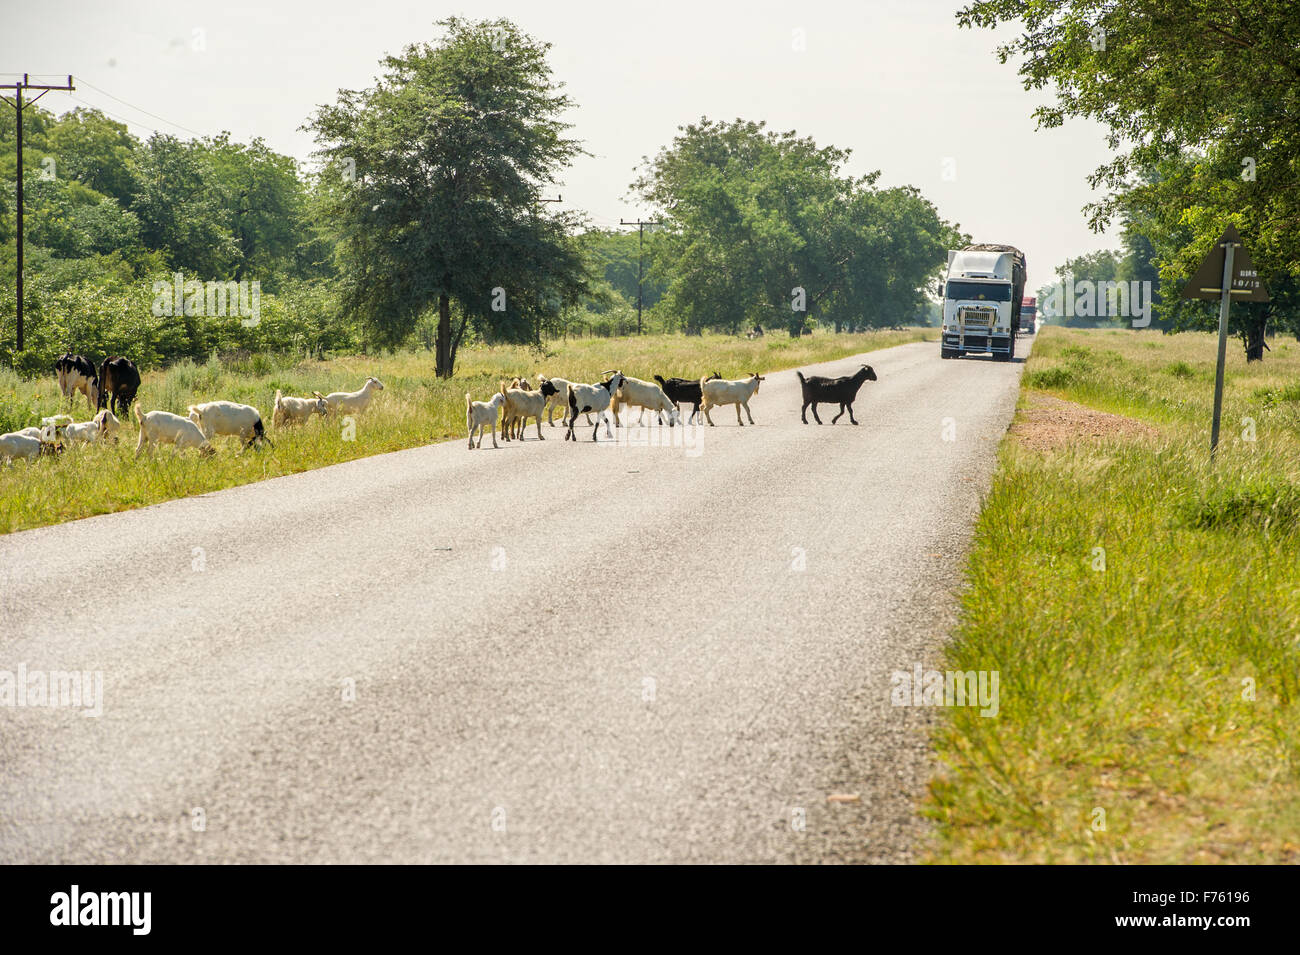 Francistown, Botswana - Freilandhaltung Ziegen in Fahrbahn Stockfoto